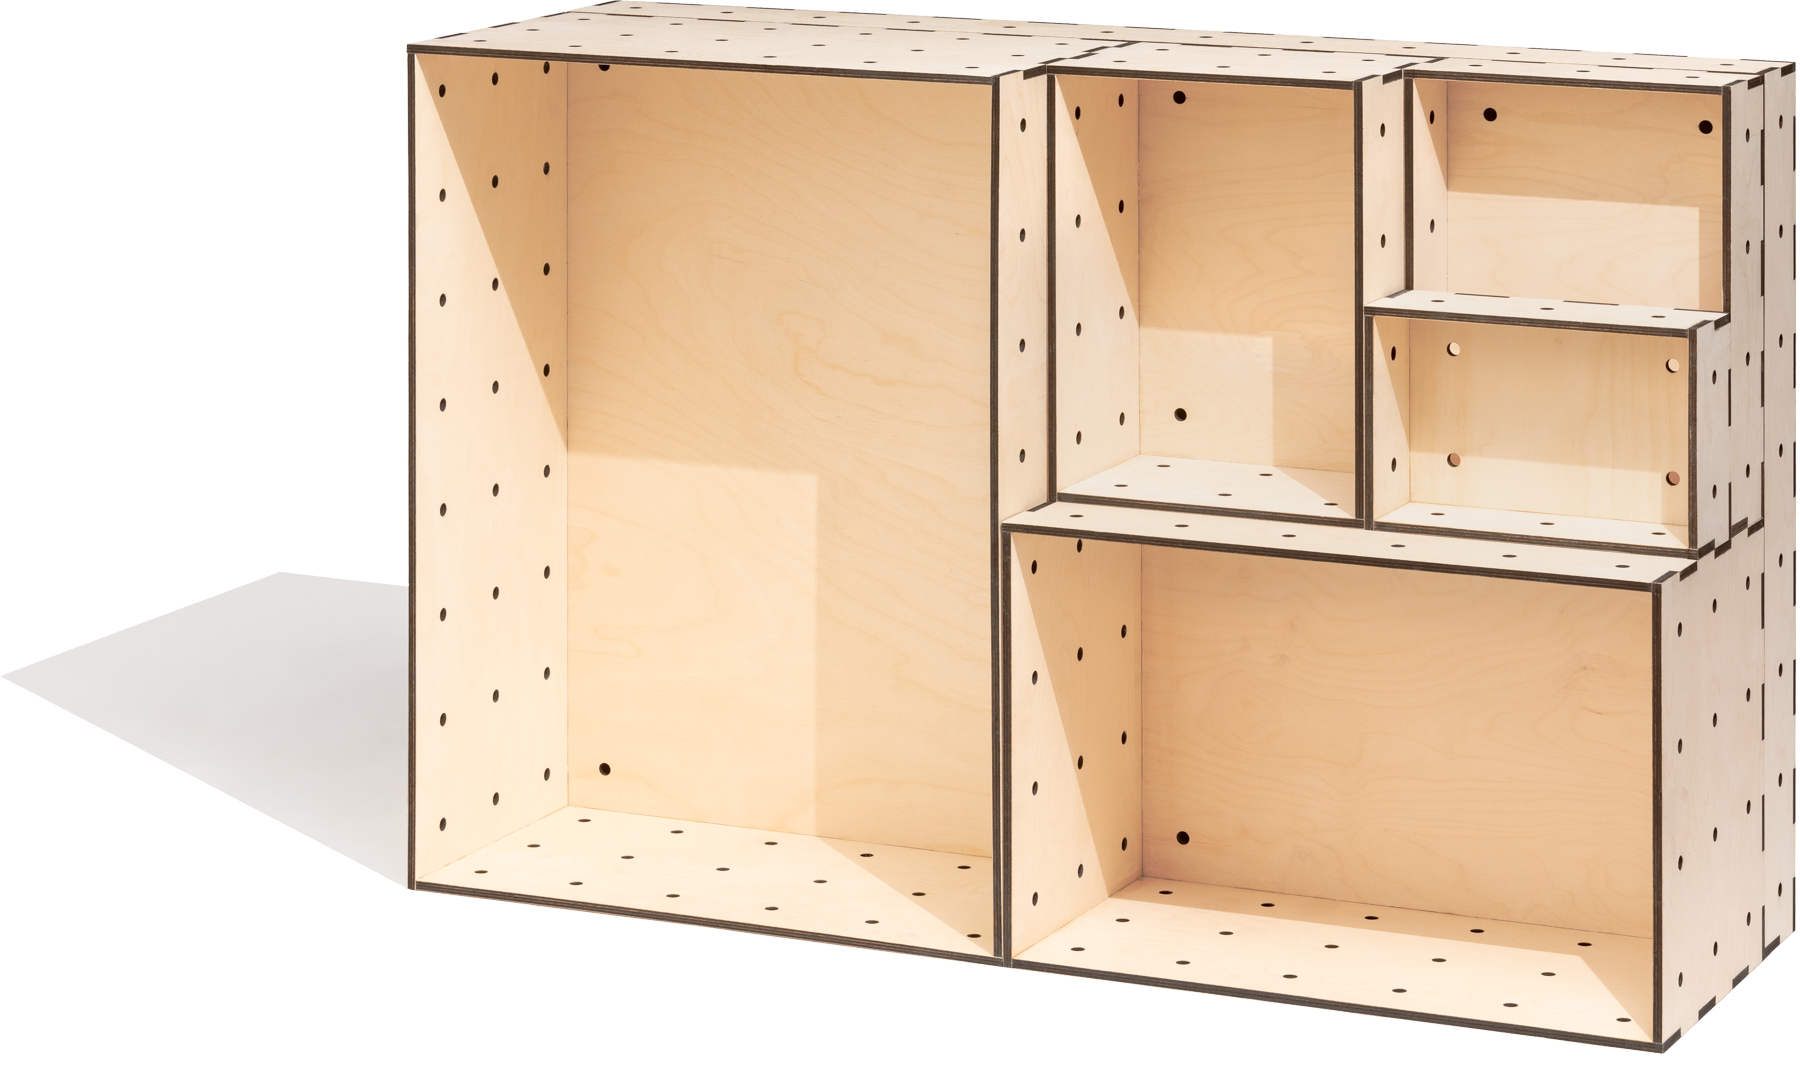 Kisten aus Sperrholz in verschiedenen Größen